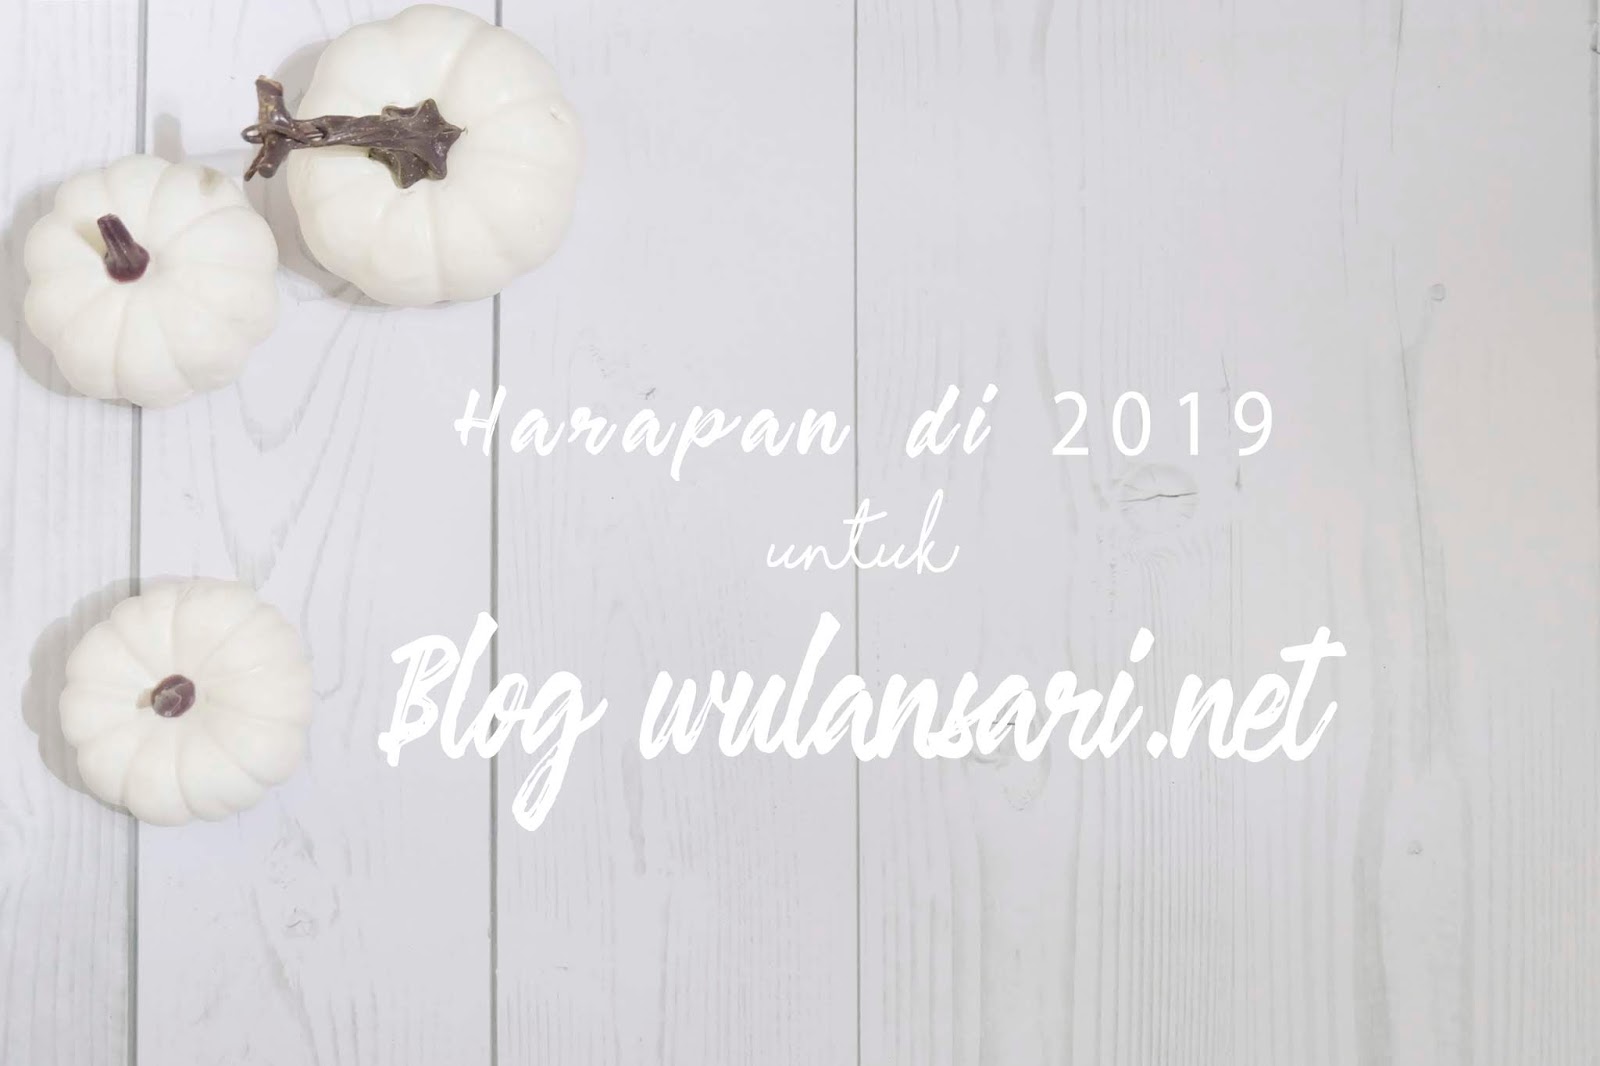 Harapan di Tahun 2019 untuk Blog Wulansari.net